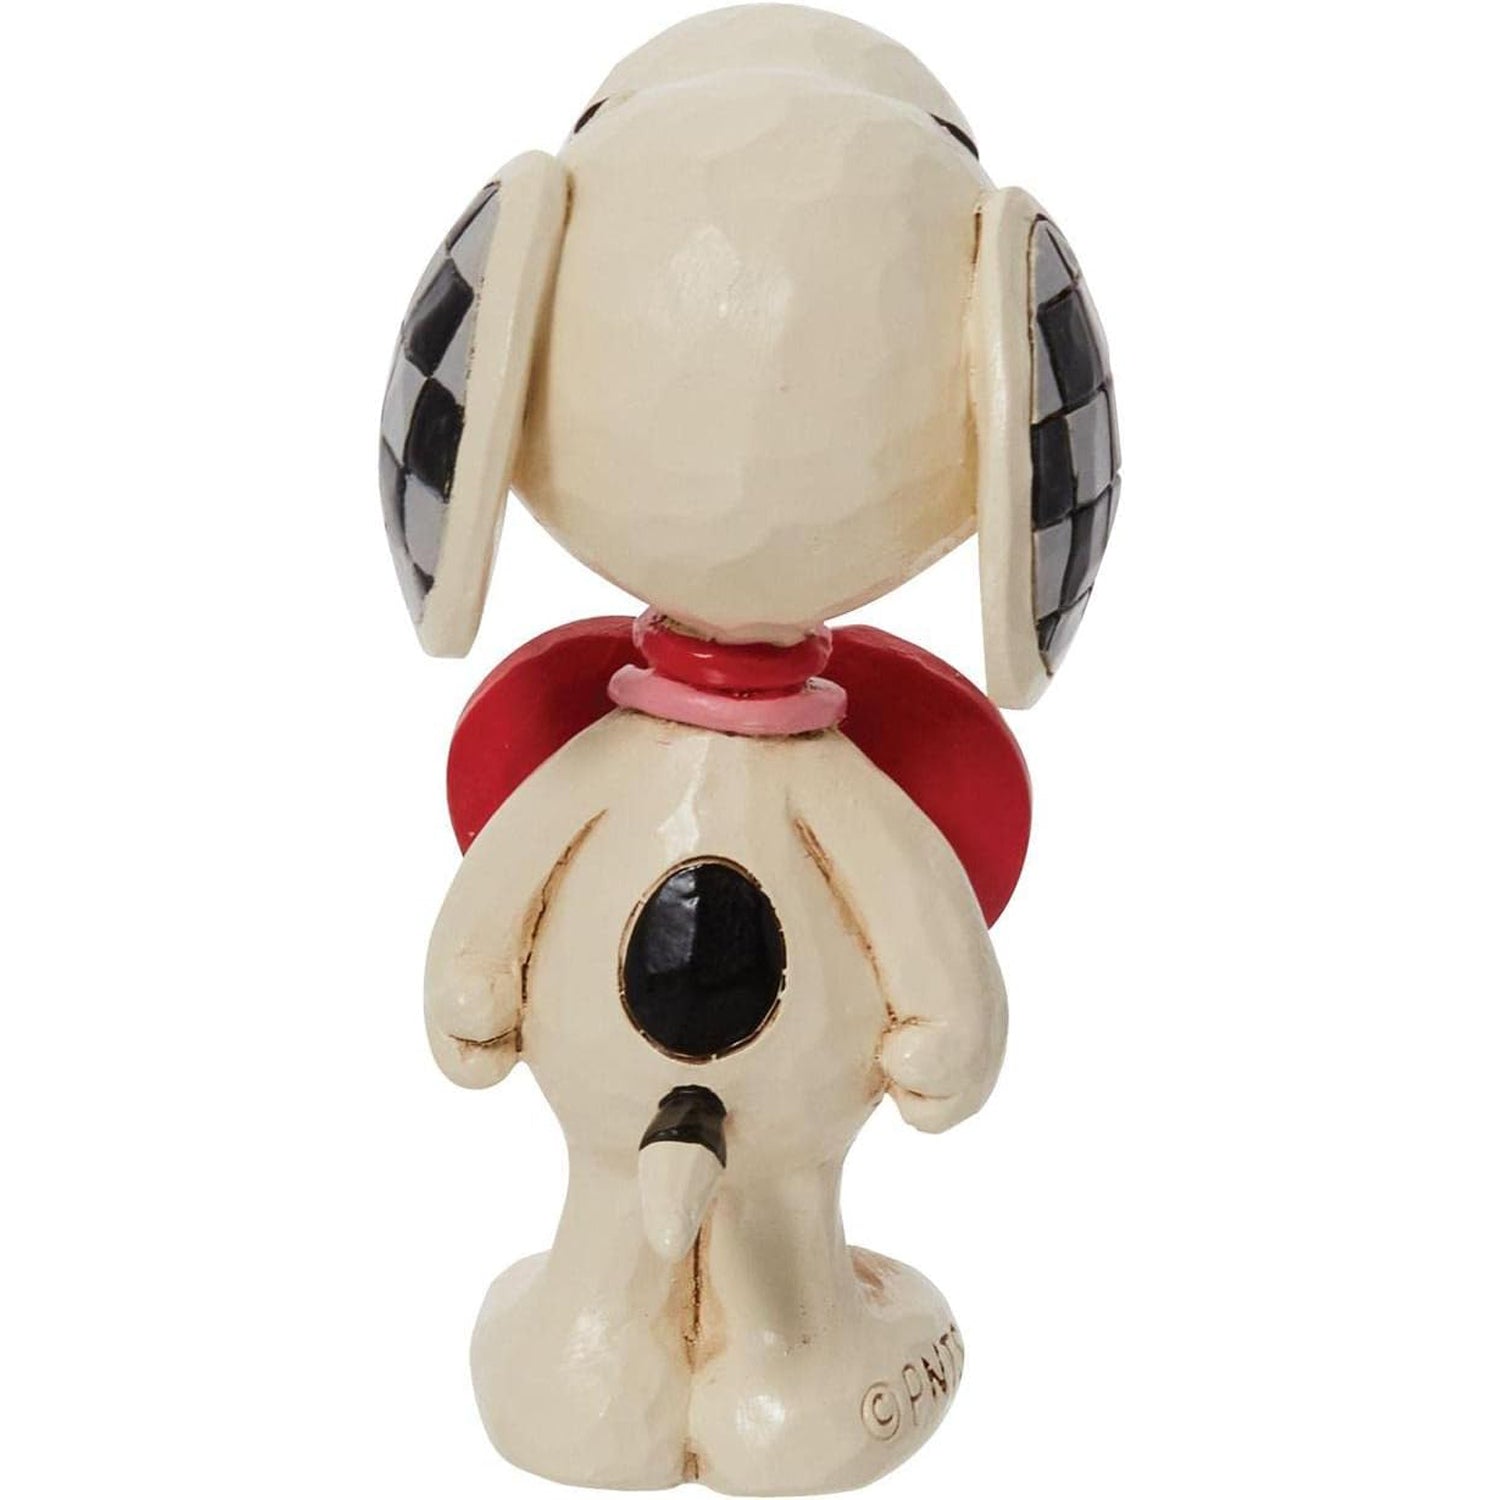 Peanuts-Snoopy-Herzschild-Jim-Shore-Figur-berlineluxe-herz-hund-rot-hinten